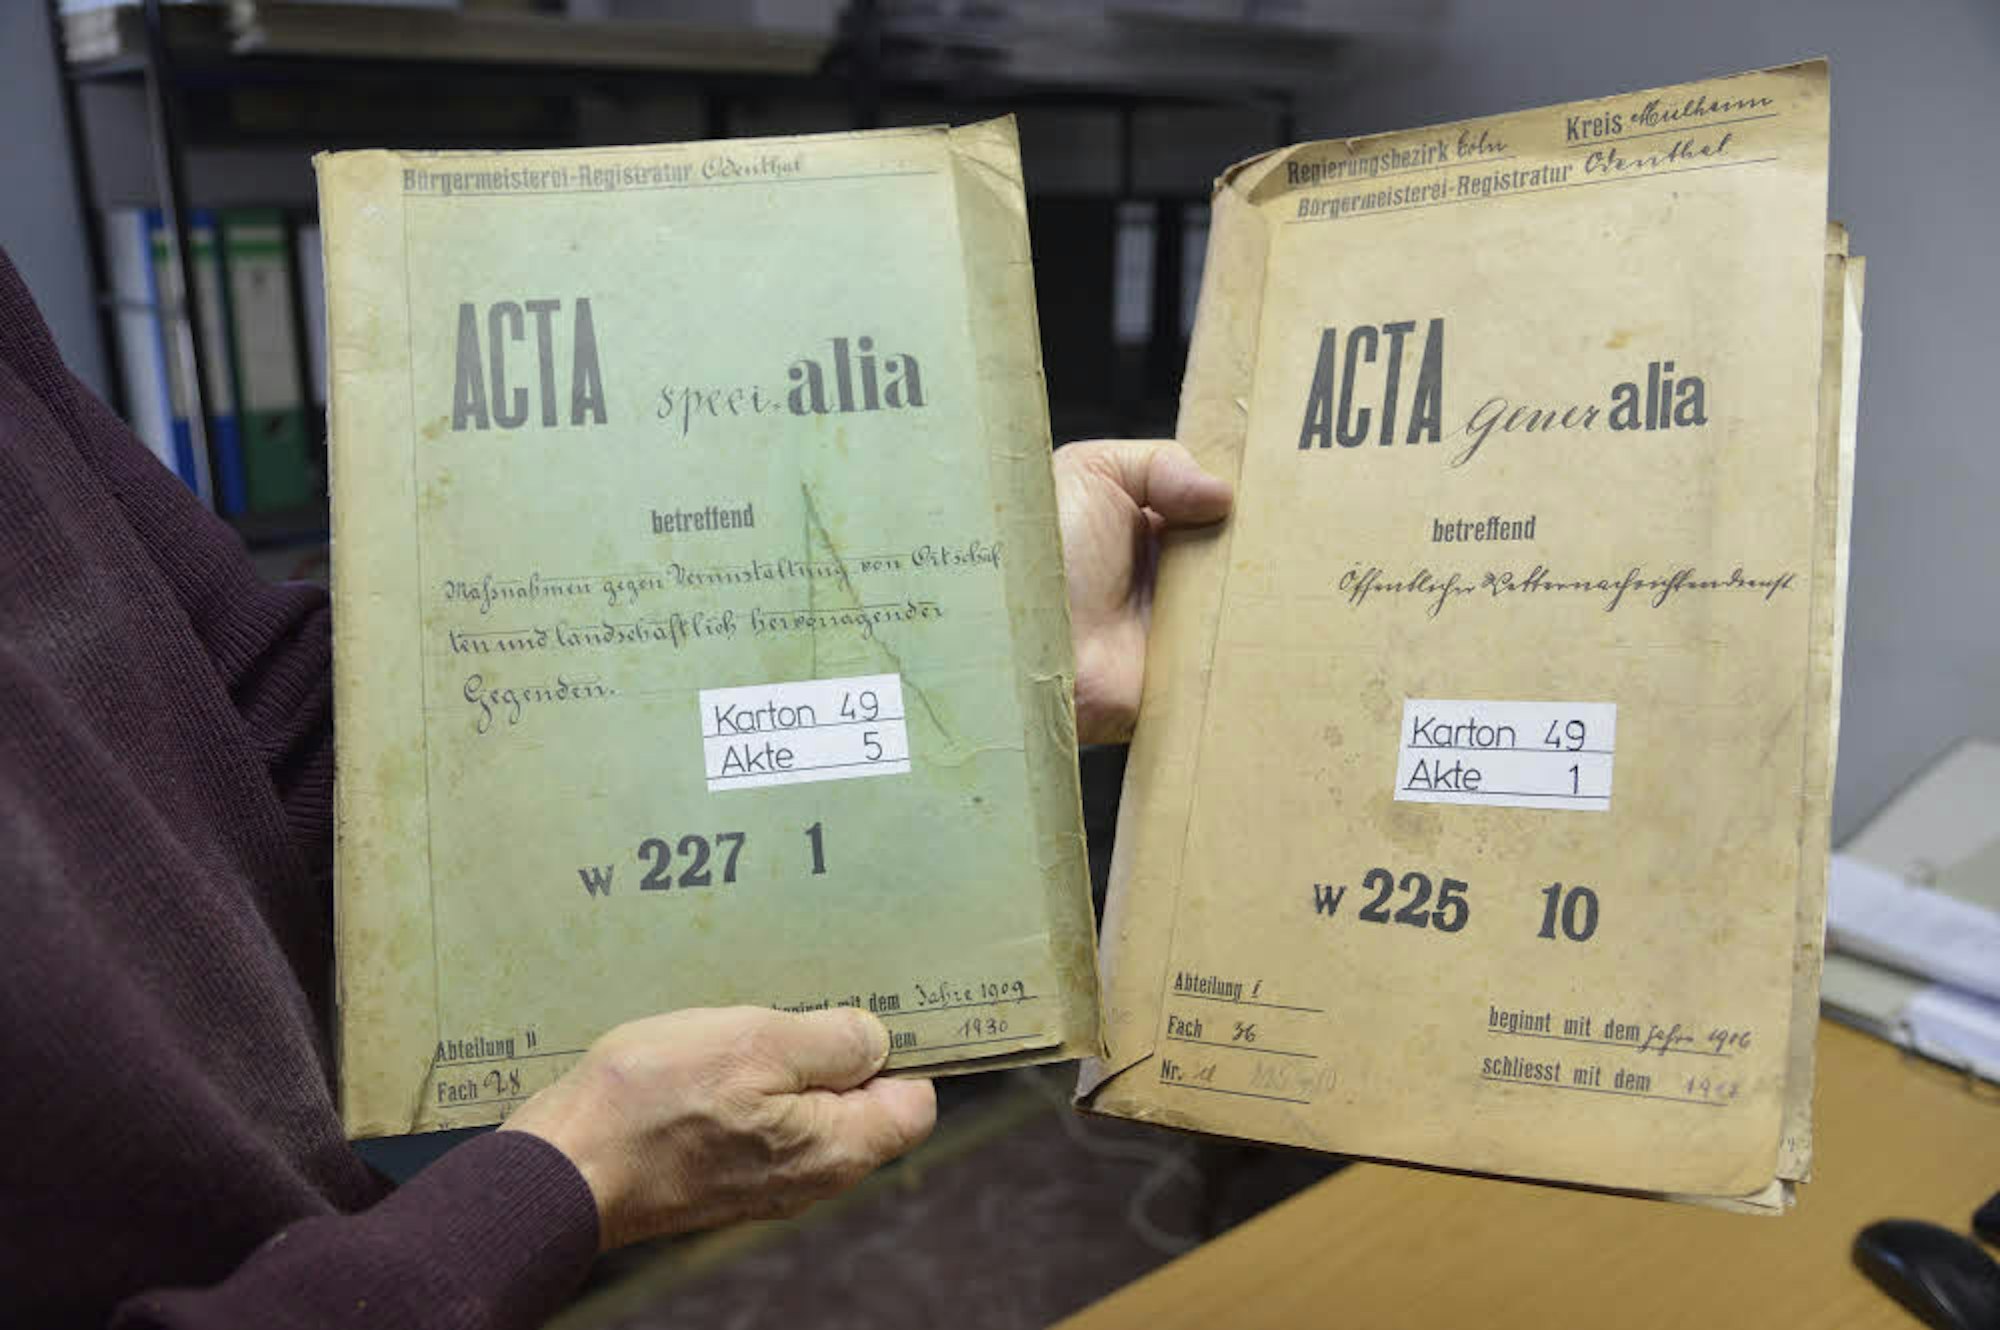 „Acta speciala“ und „Acta generalia“ gibt es im Archiv.